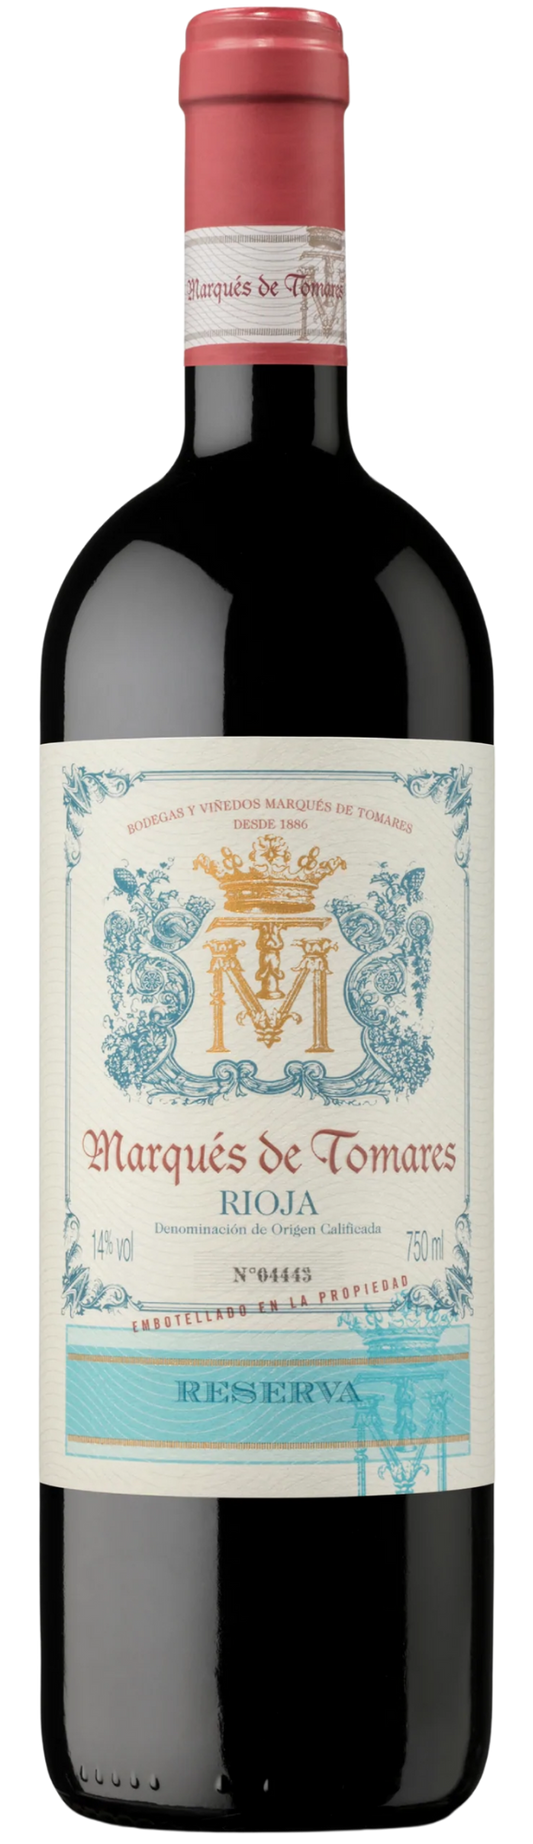 Marqués de Tomares Rioja Reserva 2016